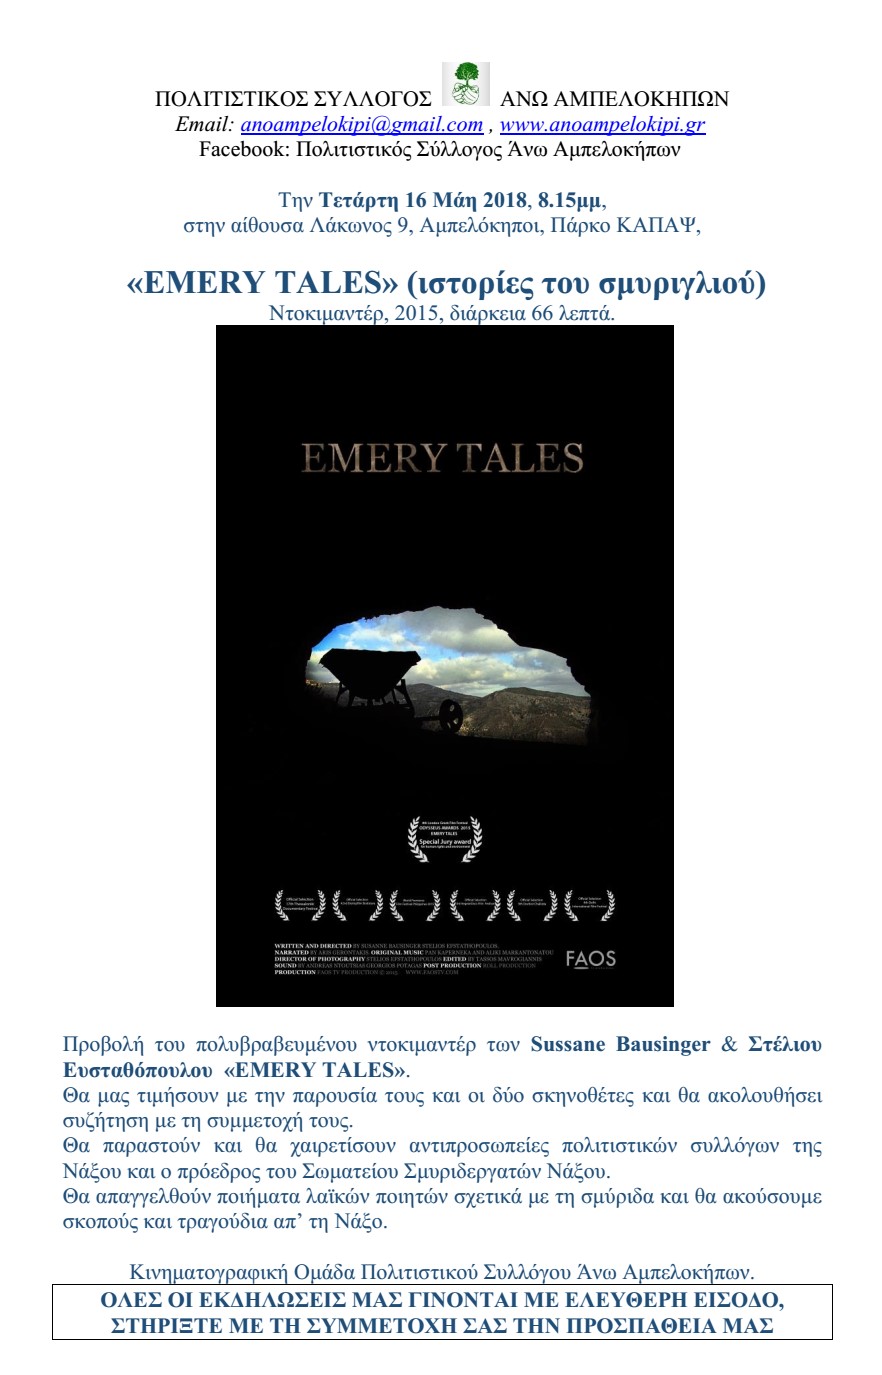 Προβολή του πολυβραβευμένου ντοκιμαντέρ «EMERY TALES» (ιστορίες του σμυριγλιού)